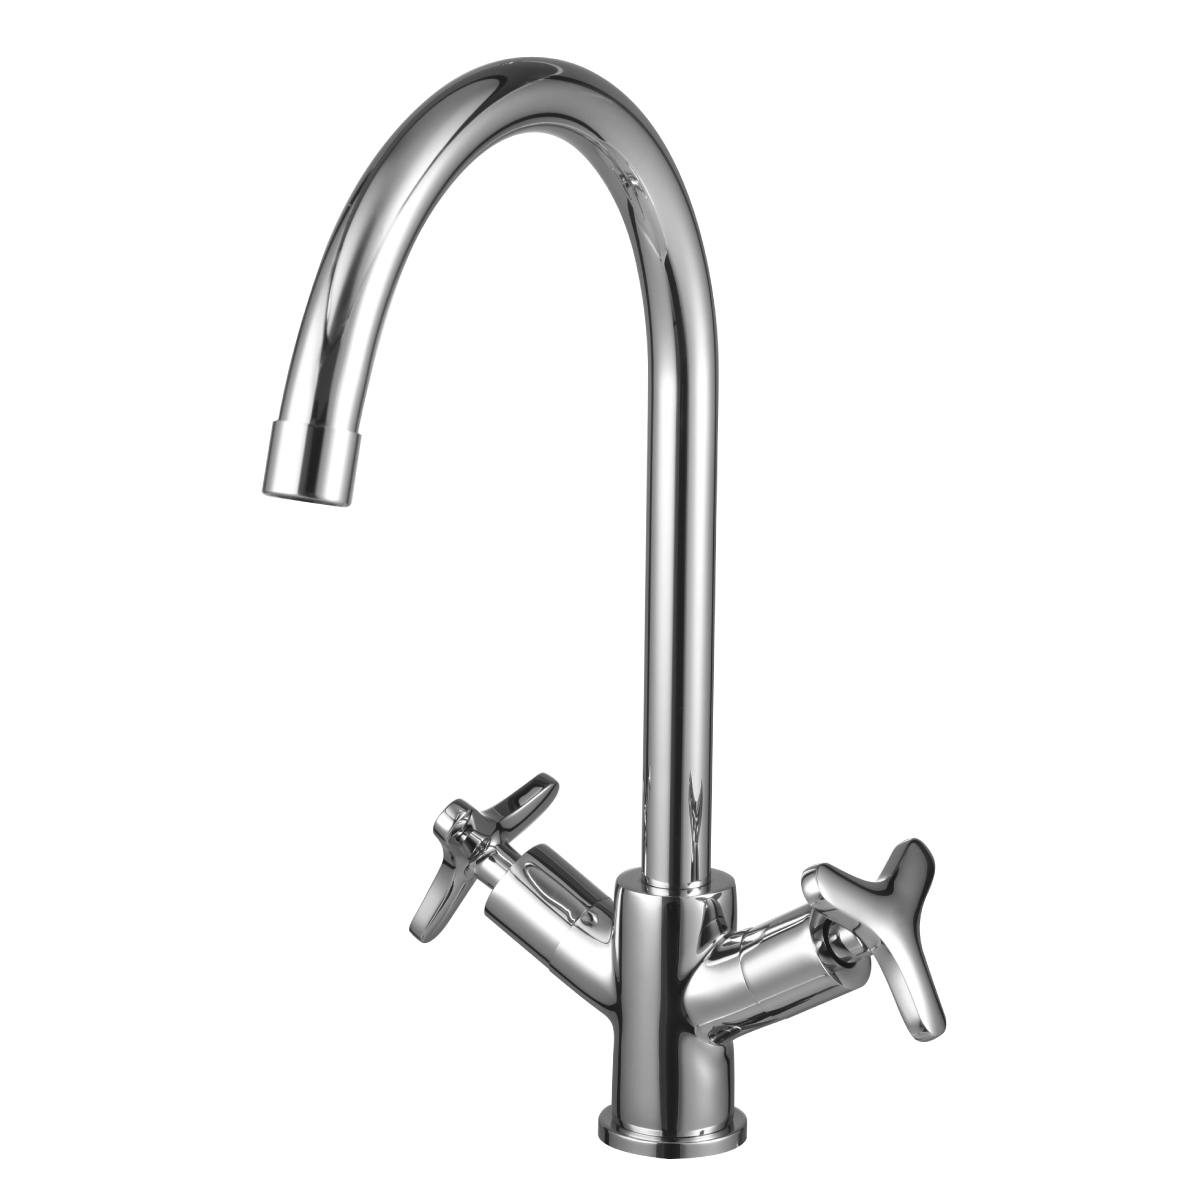 LM1905C Kitchen faucet
with swivel spout